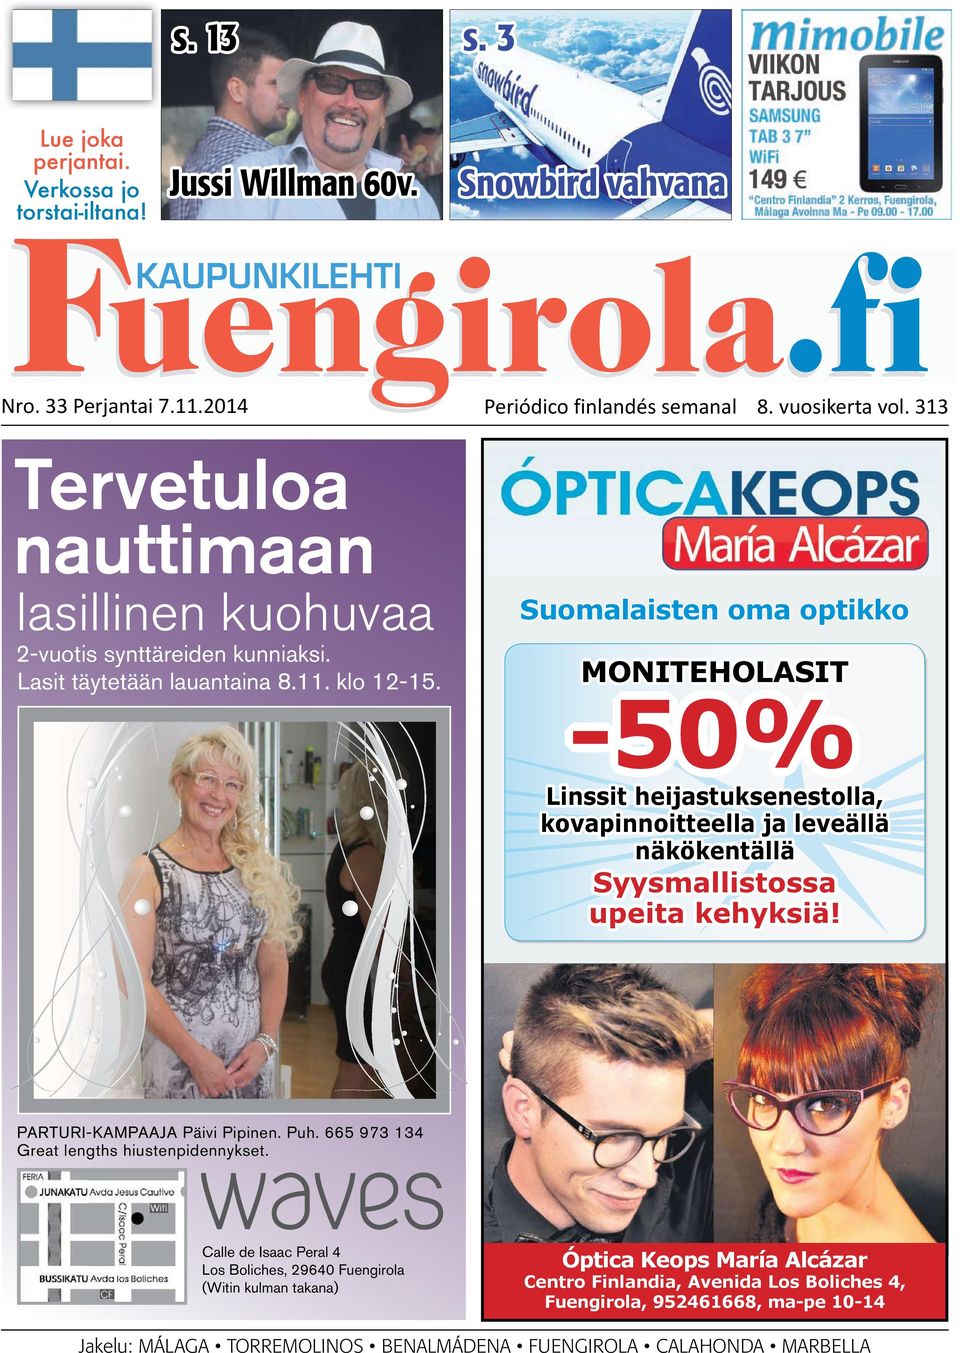 2014 Periódico finlandés semanal 8. vuosikerta vol. 313 Tervetuloa nauttimaan lasillinen kuohuvaa 2-vuotis synttäreiden kunniaksi. Lasit täytetään lauantaina 8.11. klo 12-15.